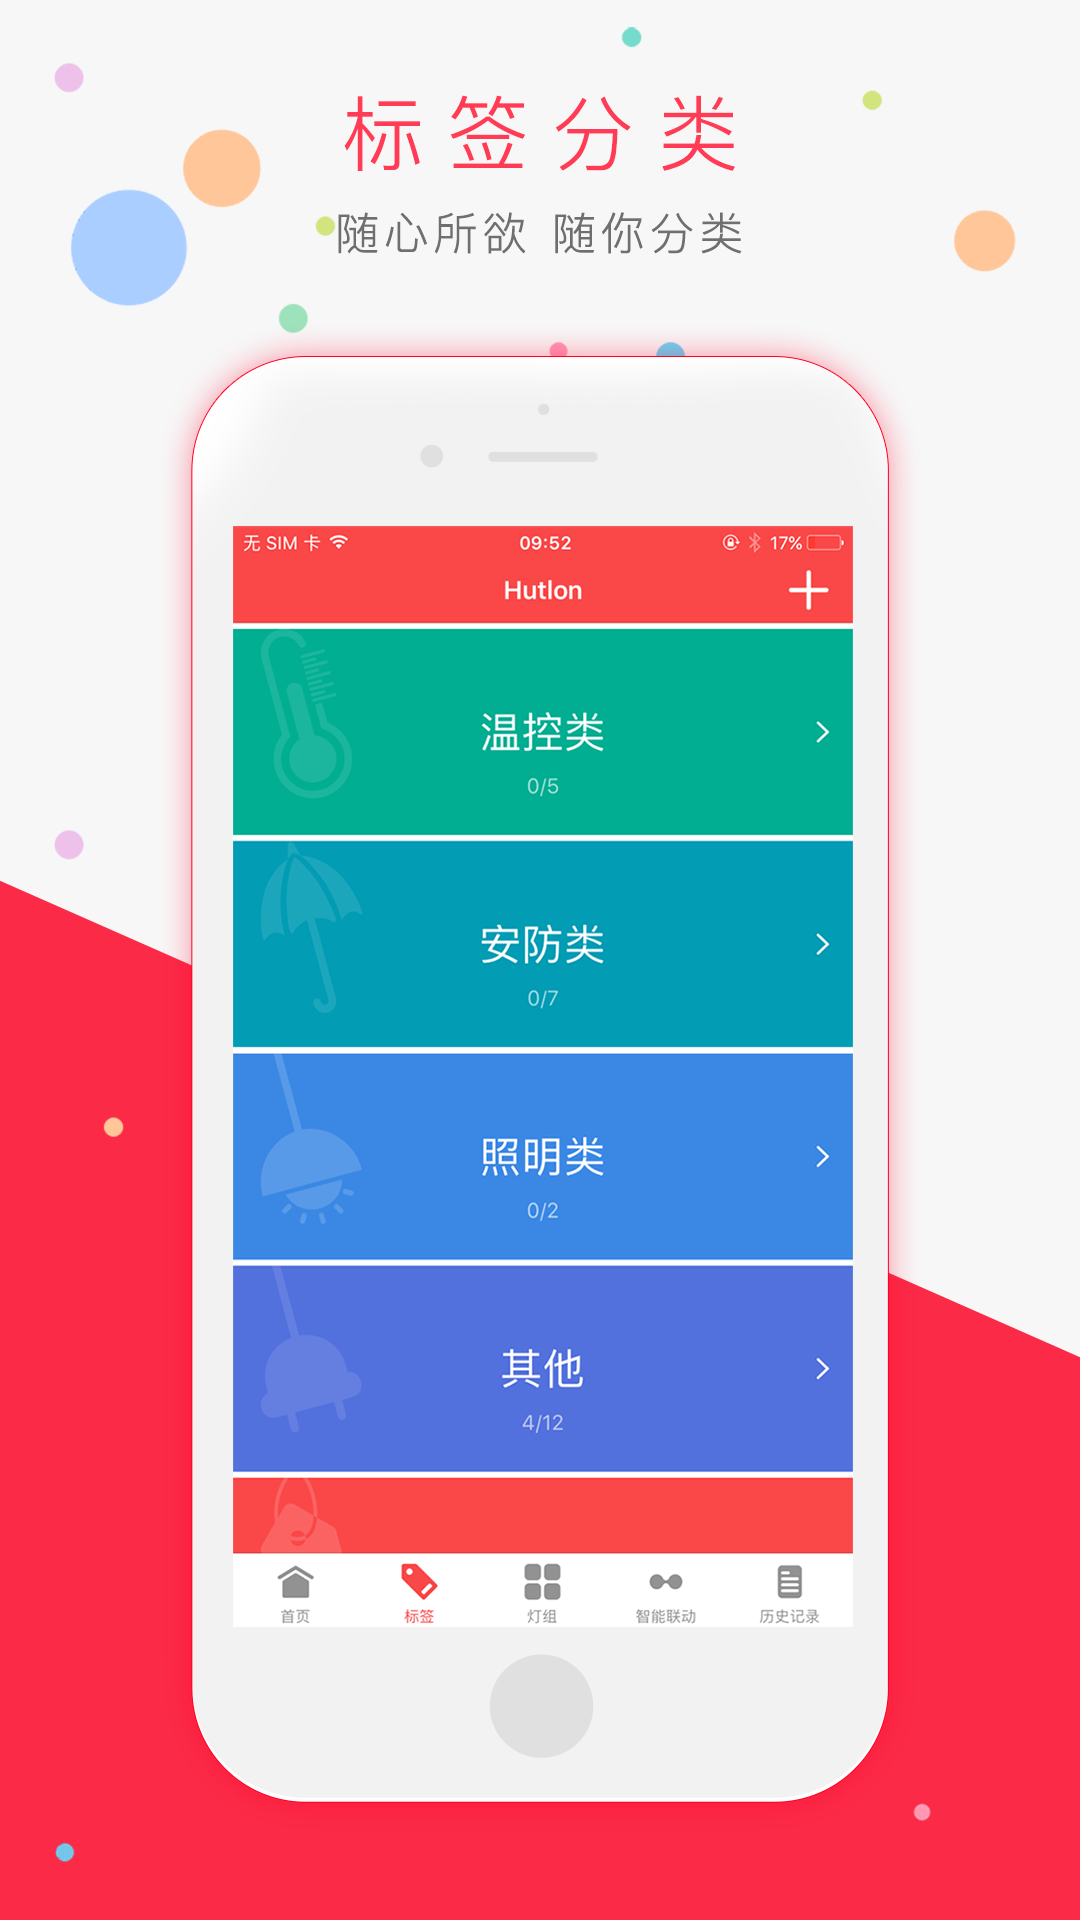 汇泰龙智家下载,官网安卓版app下载安装